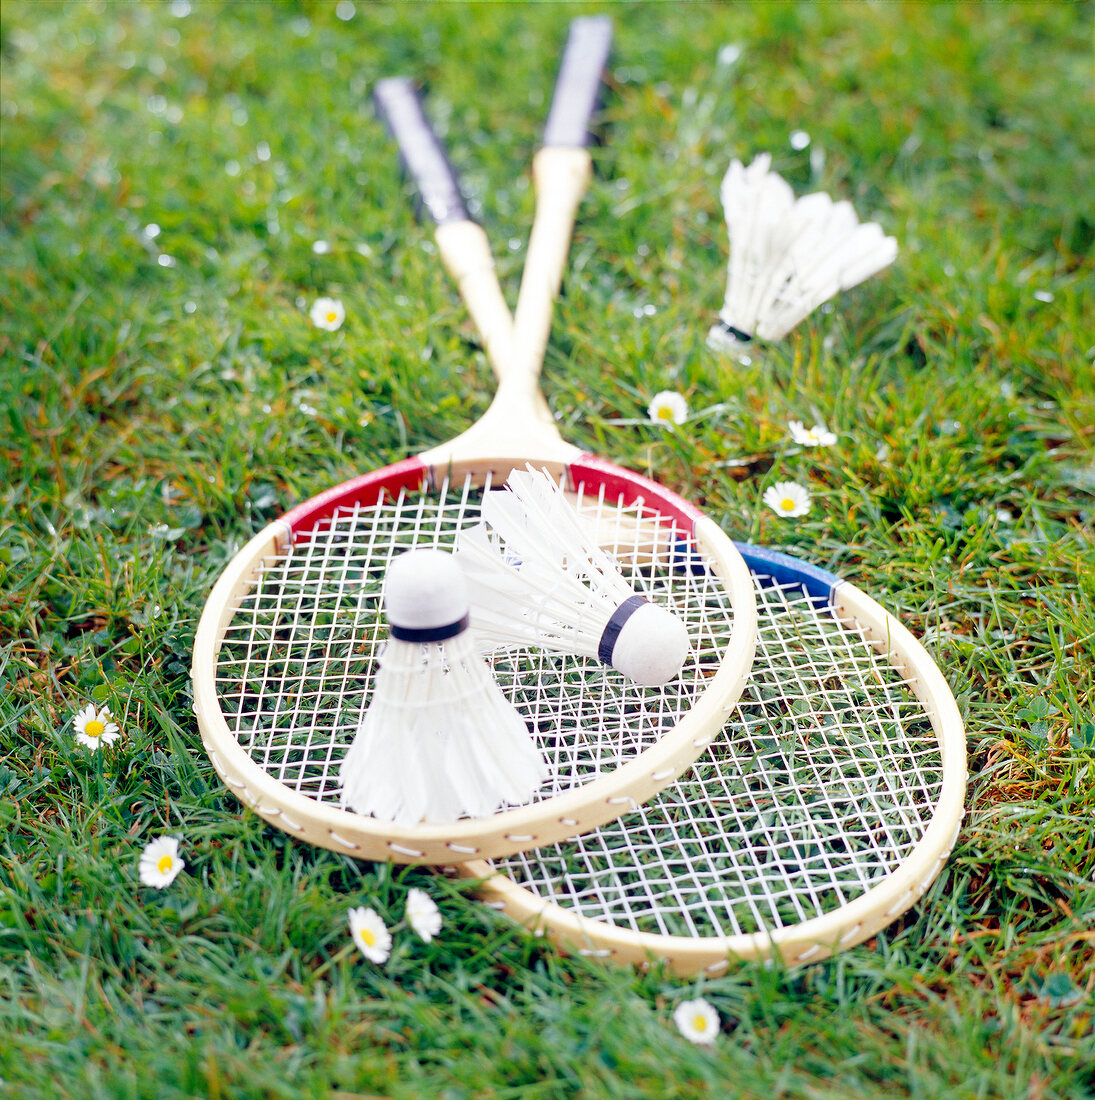 Zwei Badmintonschläger mit 3 Federbällen.